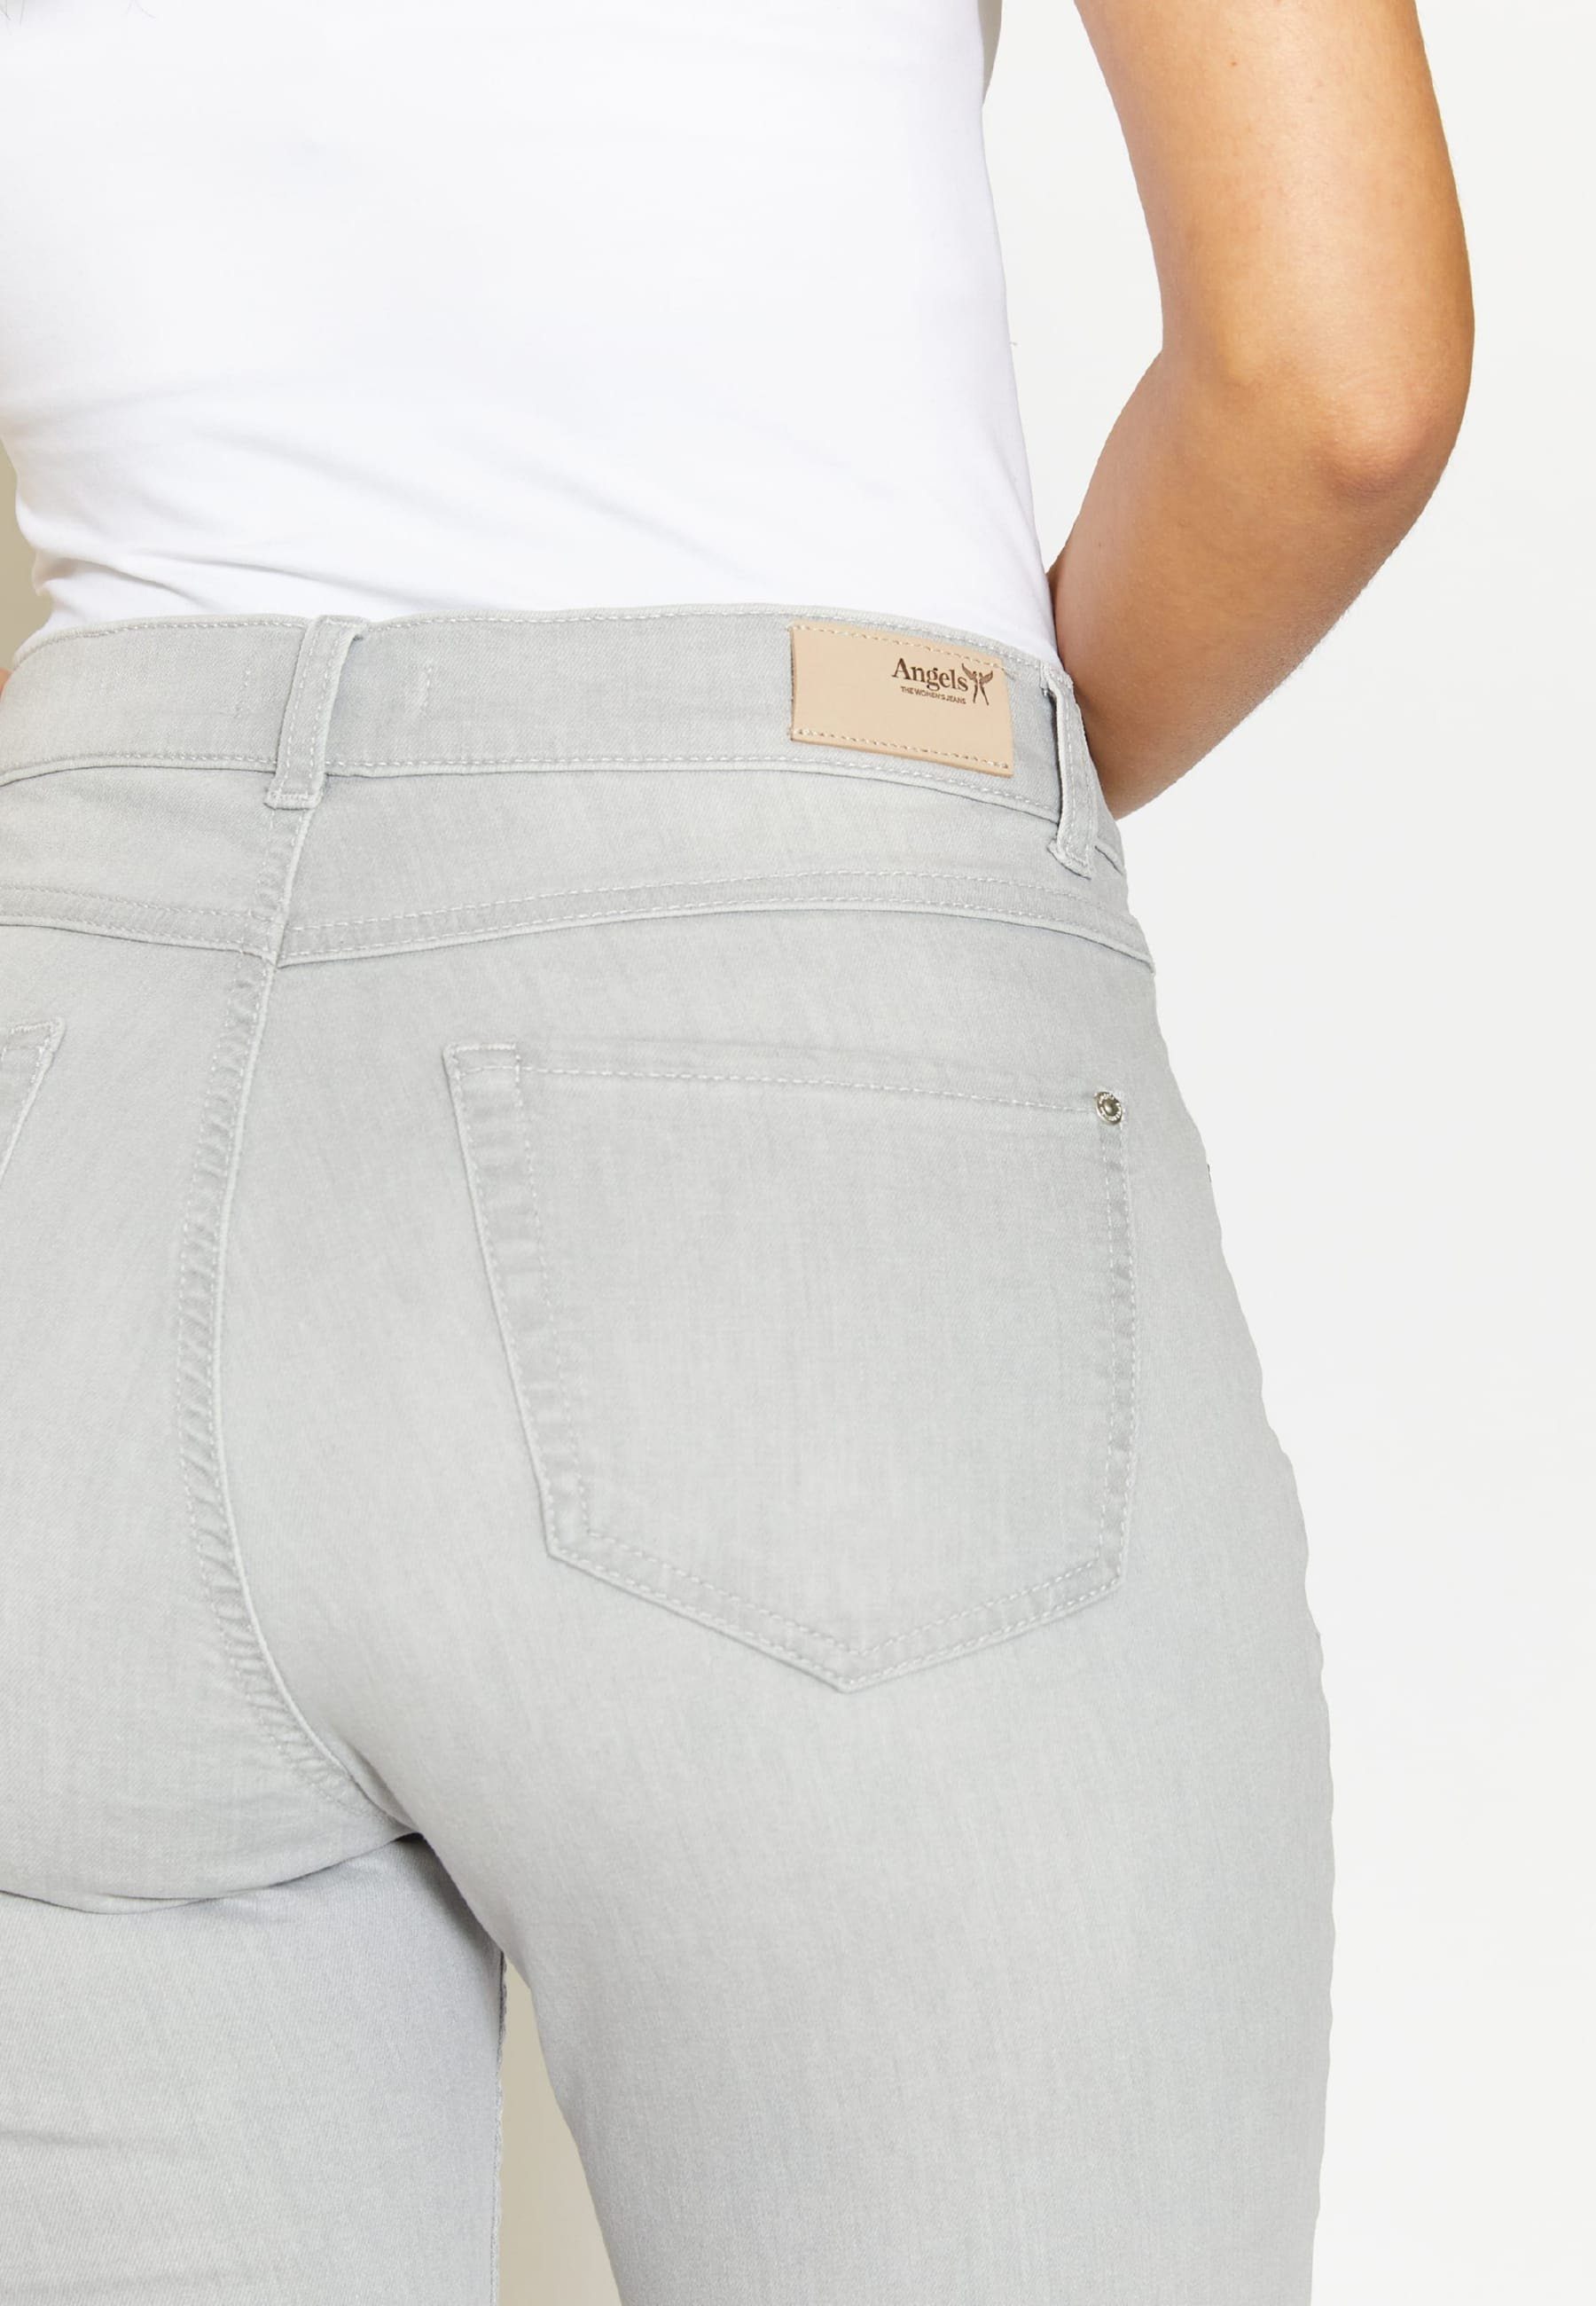 ANGELS 5-Pocket-Jeans mit Jeans Used-Look TU Capri Label-Applikationen mit hellgrau